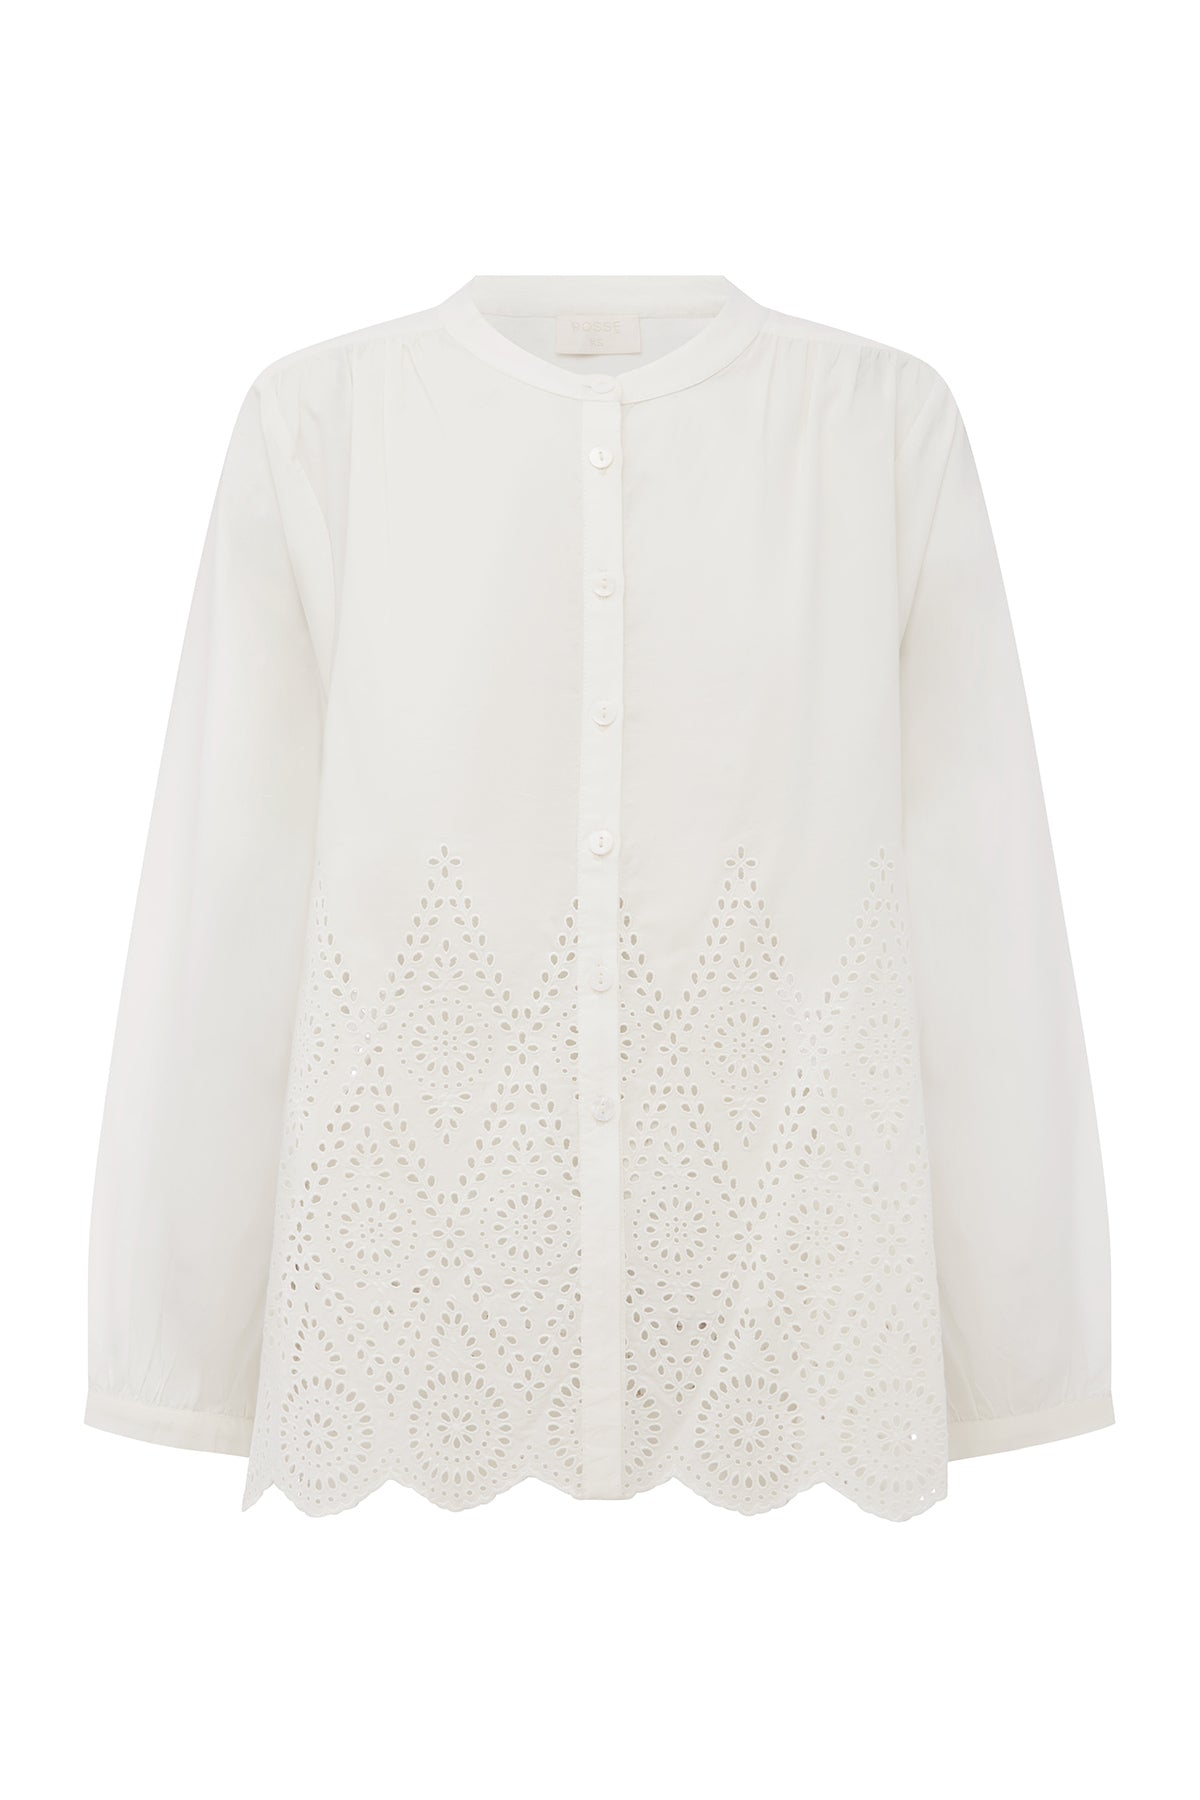 Posse Louisa Shirt - Vintage White